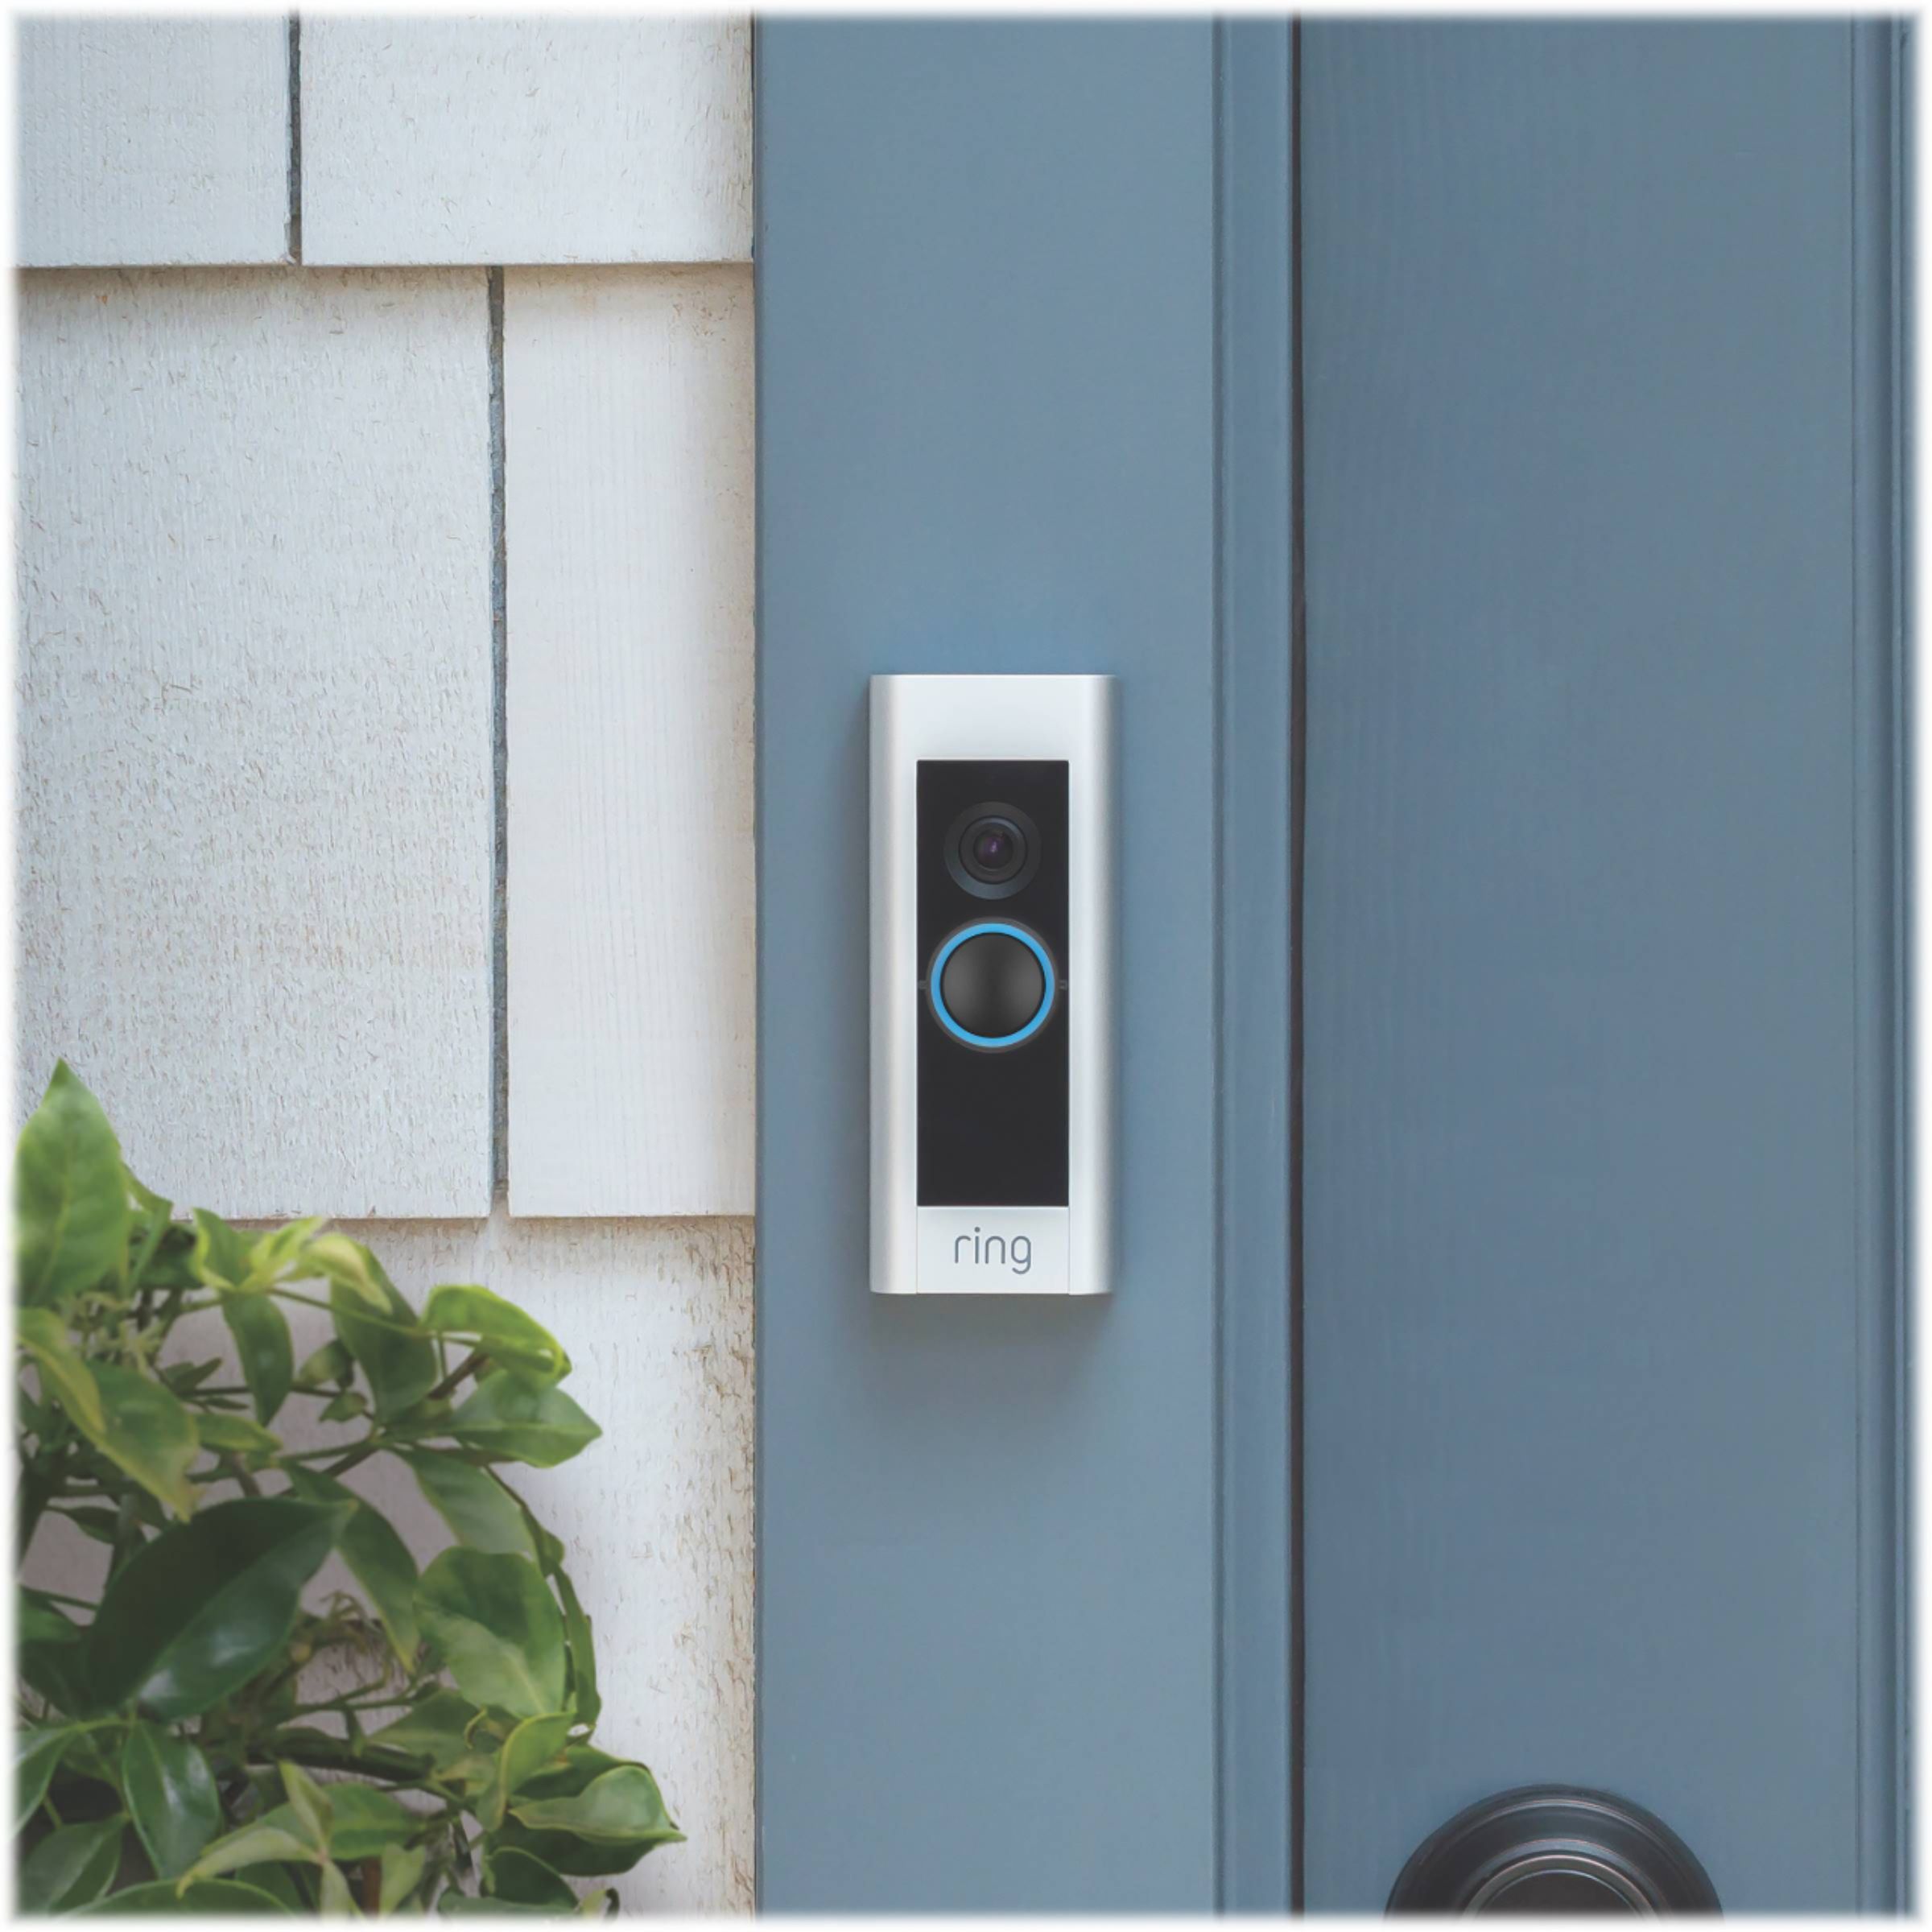 Ring Pro Door Bell Hardwired Doorbell Wi-Fi Brand New 8VR1P6-0EN0 